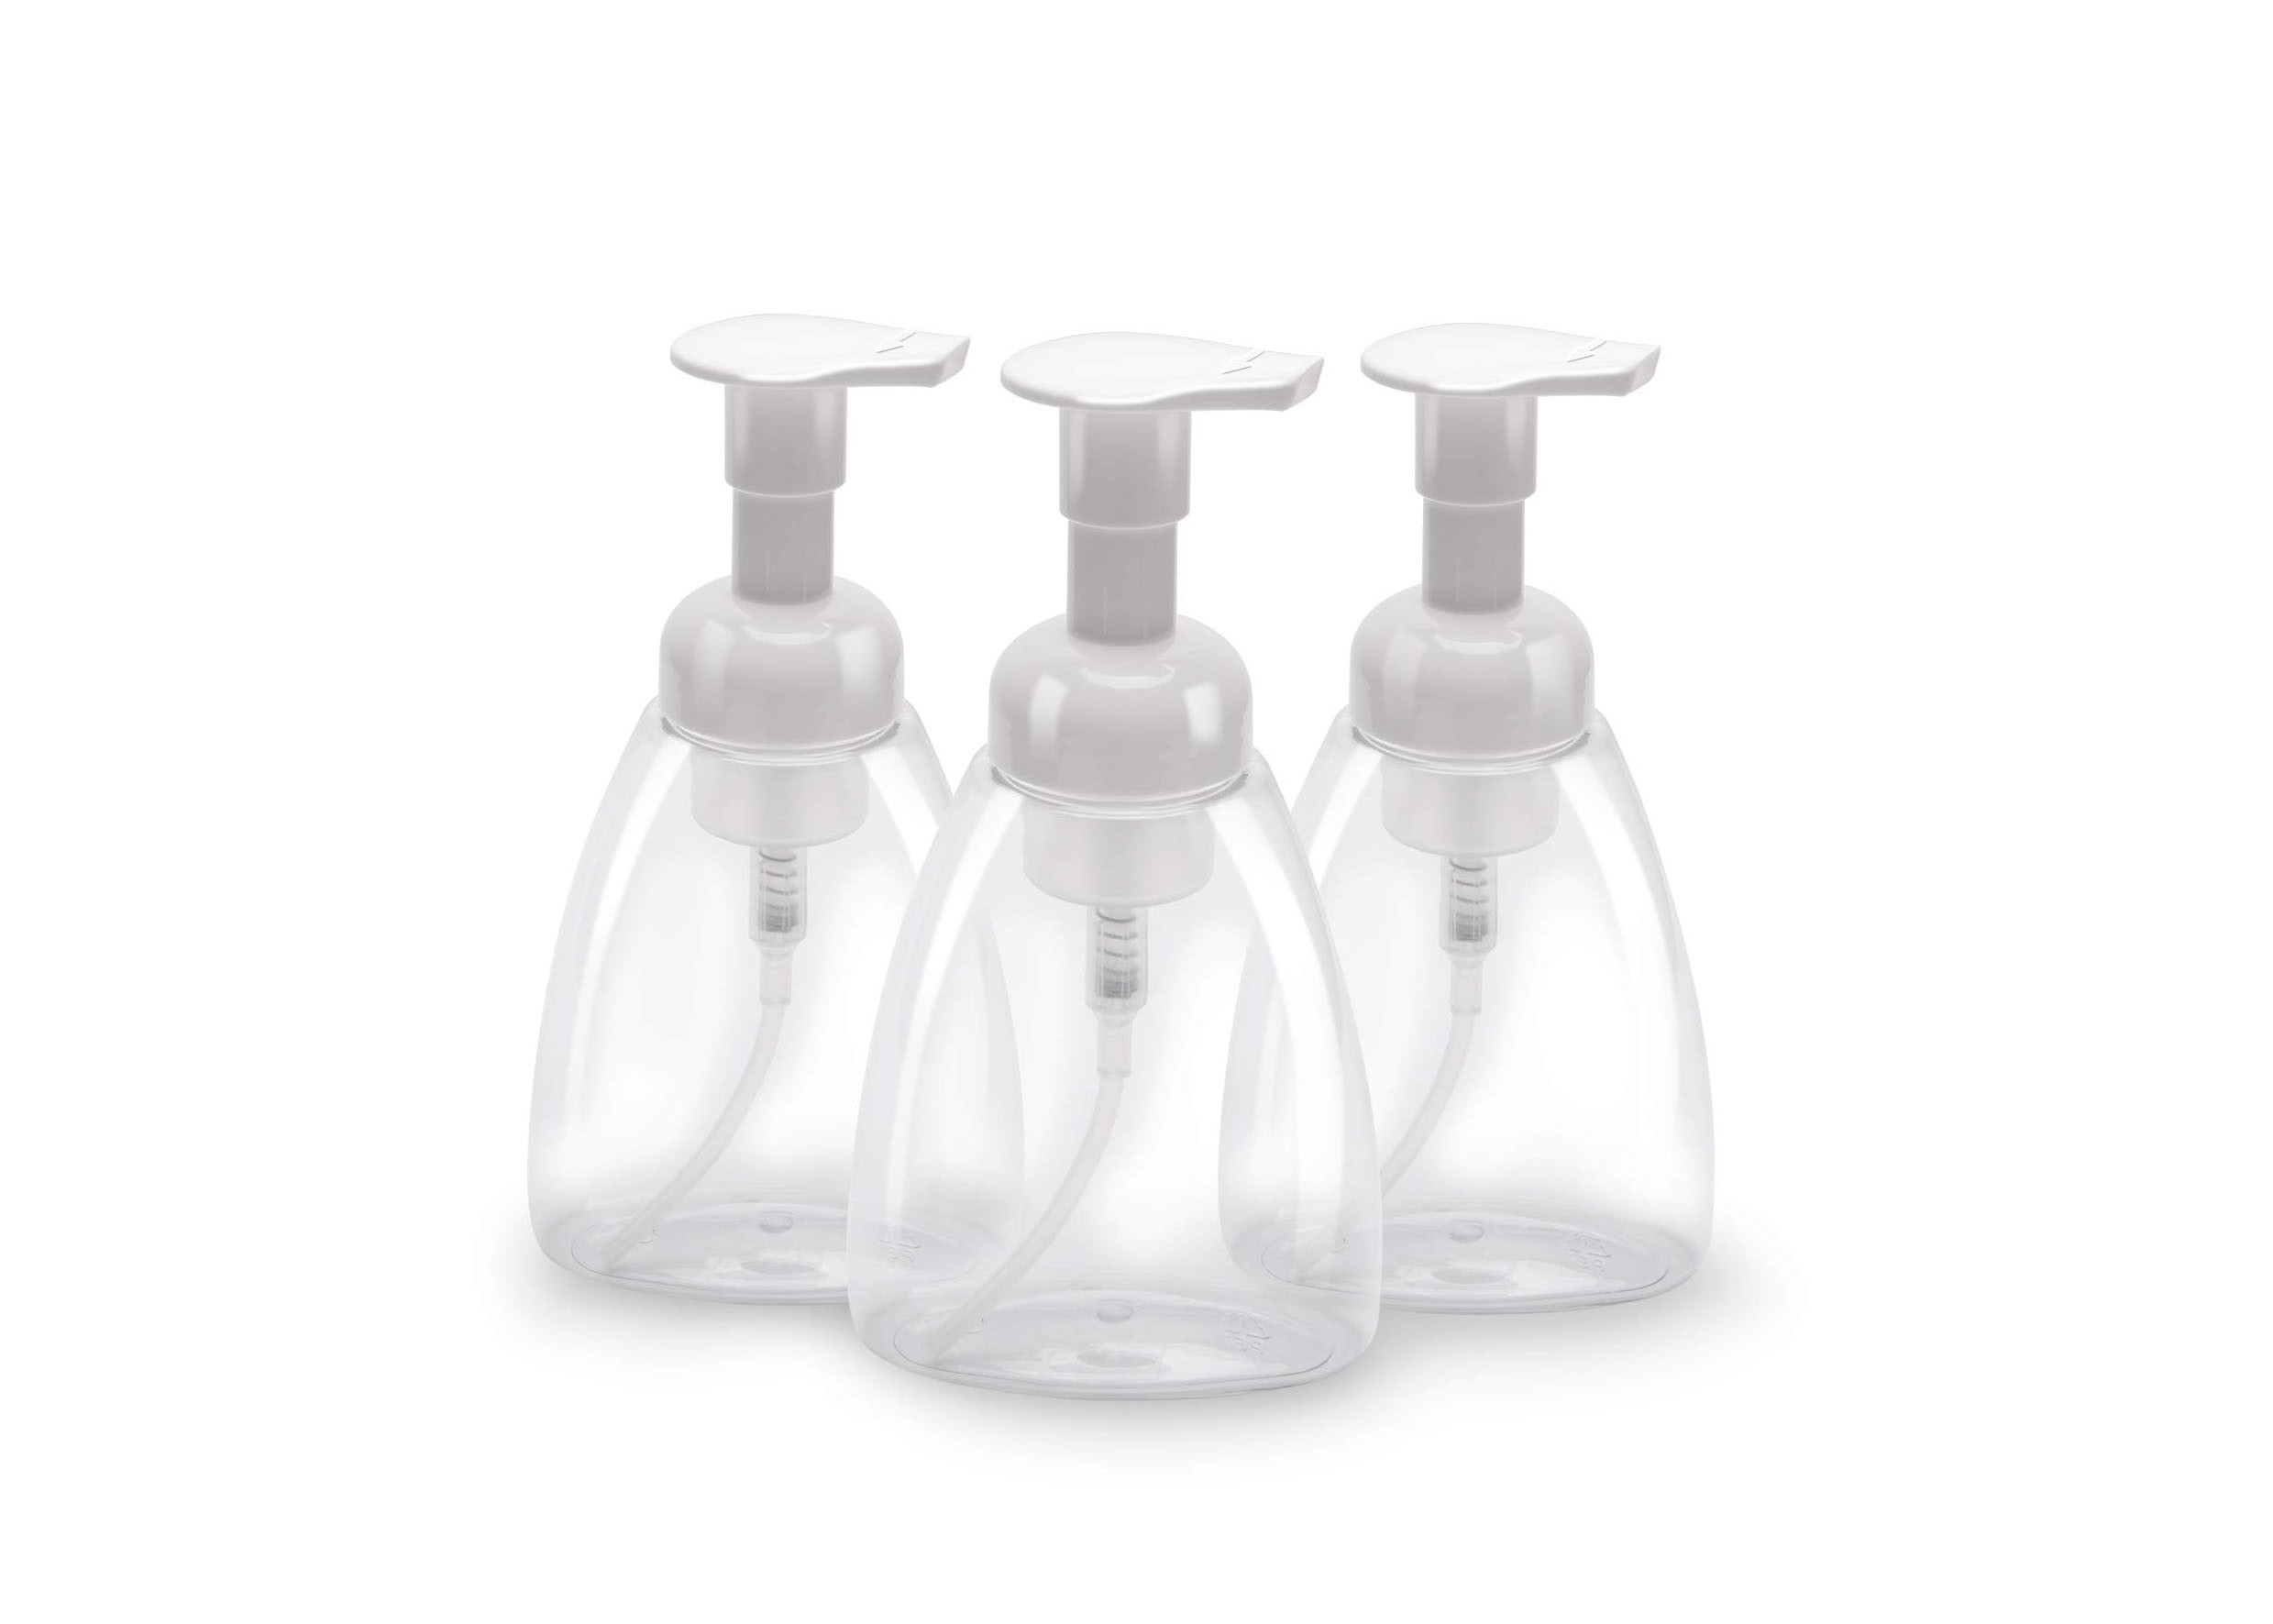 Διαφανή μπουκάλια αντλιών αφρού 300ml κενά για τα του προσώπου μέσα καθαρισμού σαμπουάν